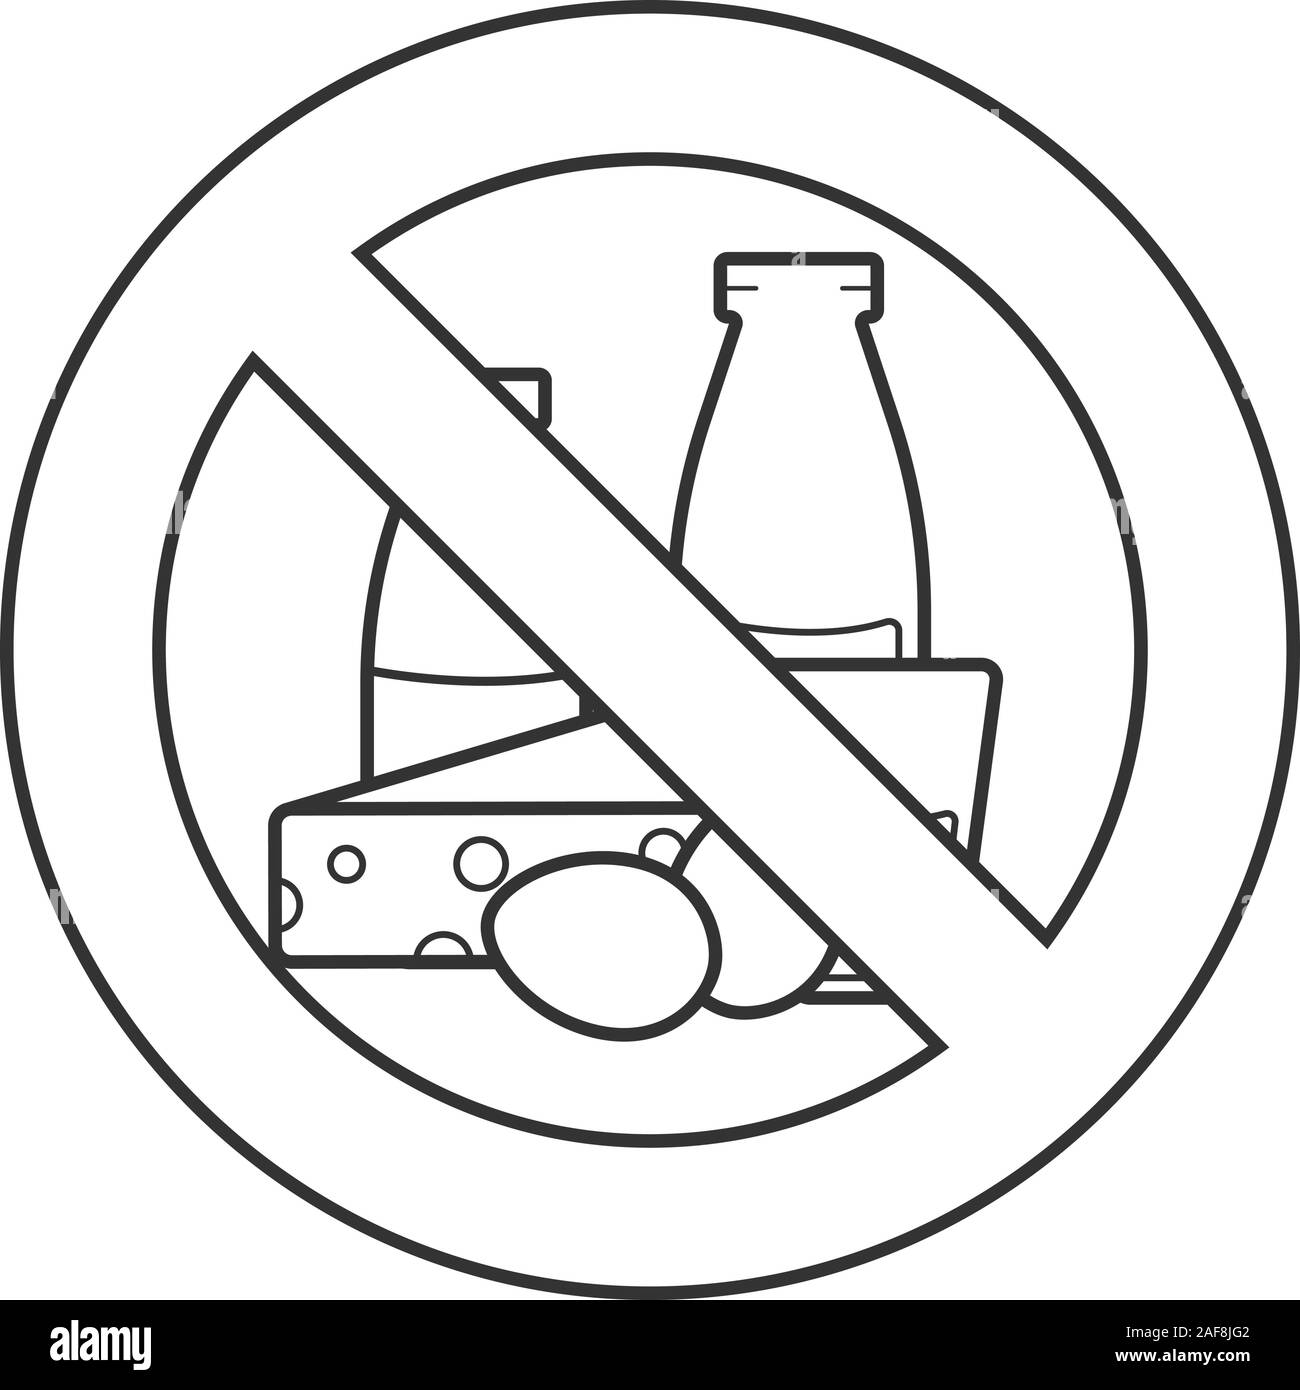 Forbidden eat sign Imágenes de stock en blanco y negro - Alamy